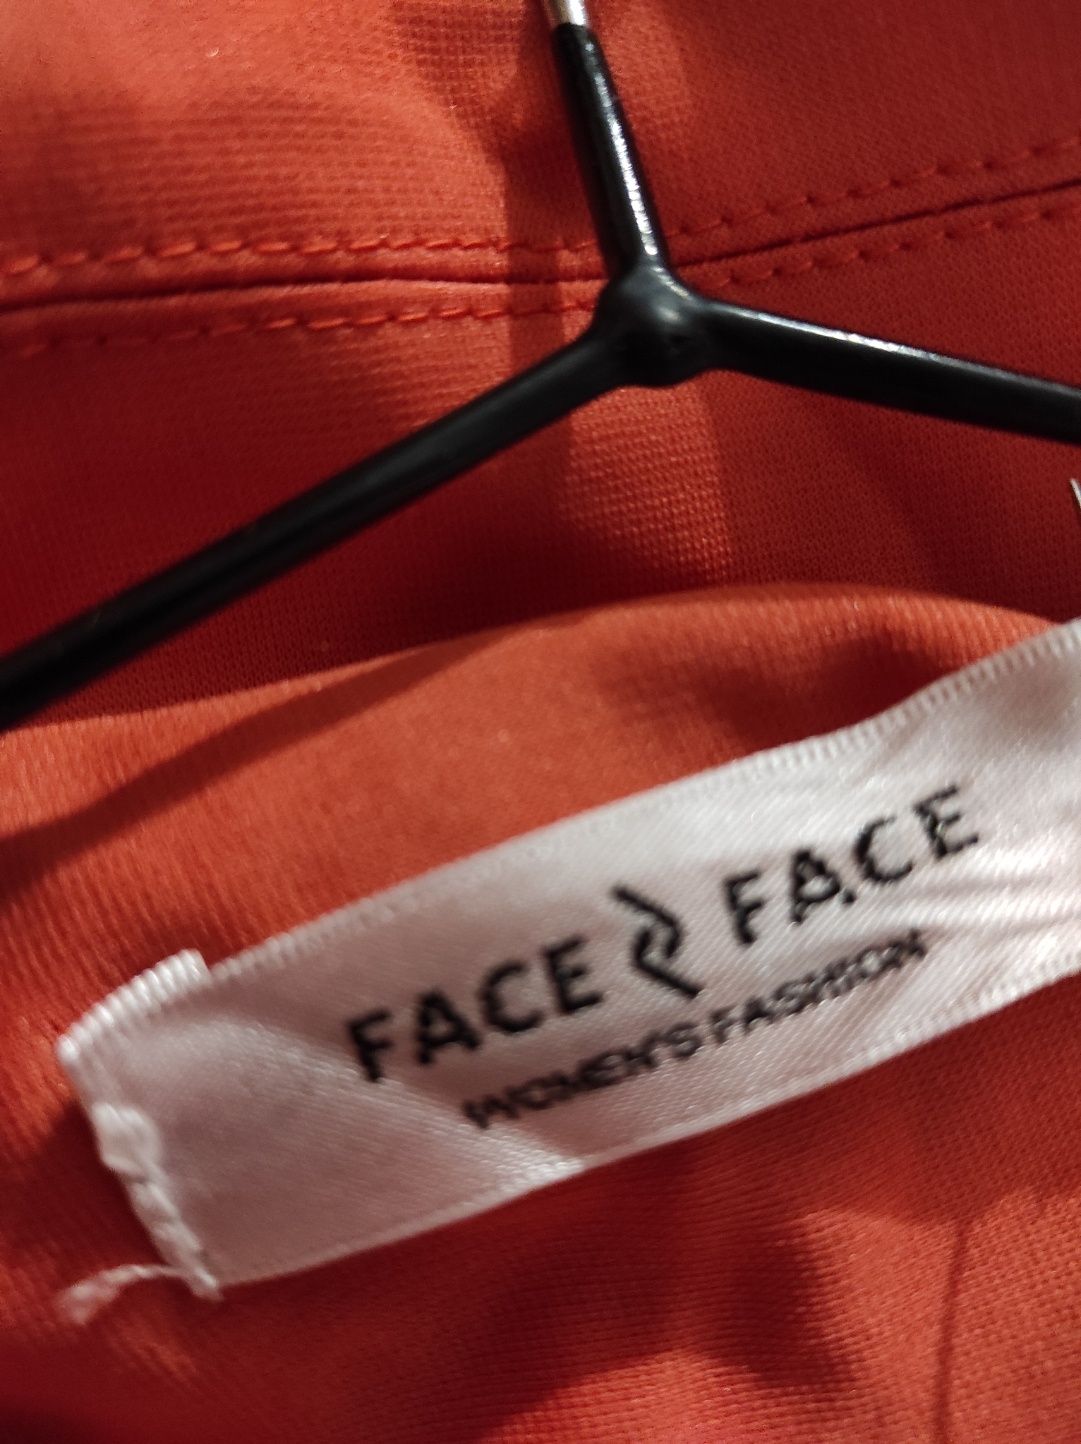 Трикотажный пиджак, жакет, накидка от бренда Face&Face